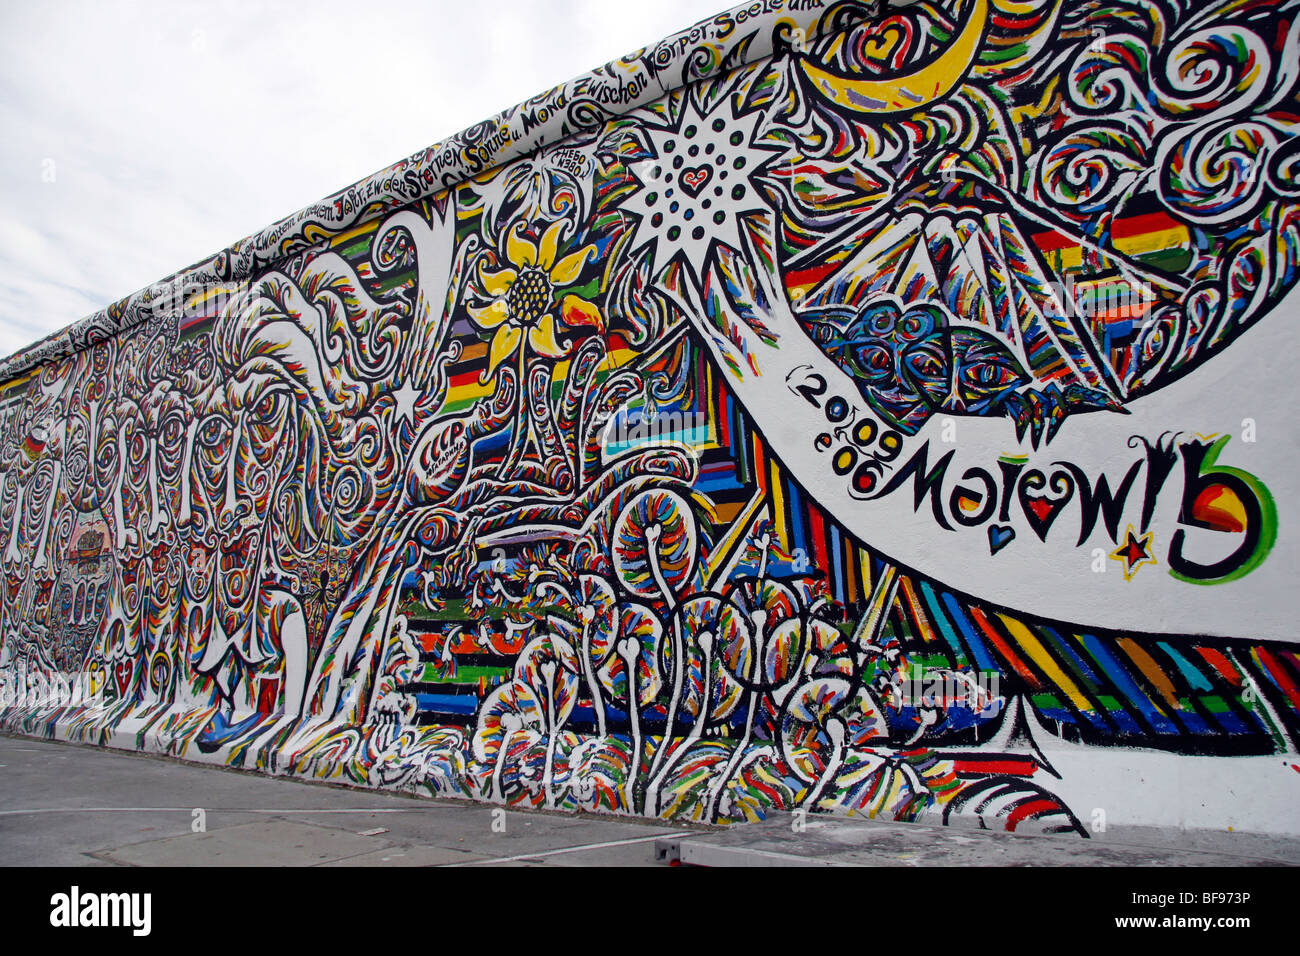 Die Berliner Mauer an der East Side Gallery, einem 1,3 km langen Abschnitt der Mauer nahe dem Zentrum von Berlin Stockfoto